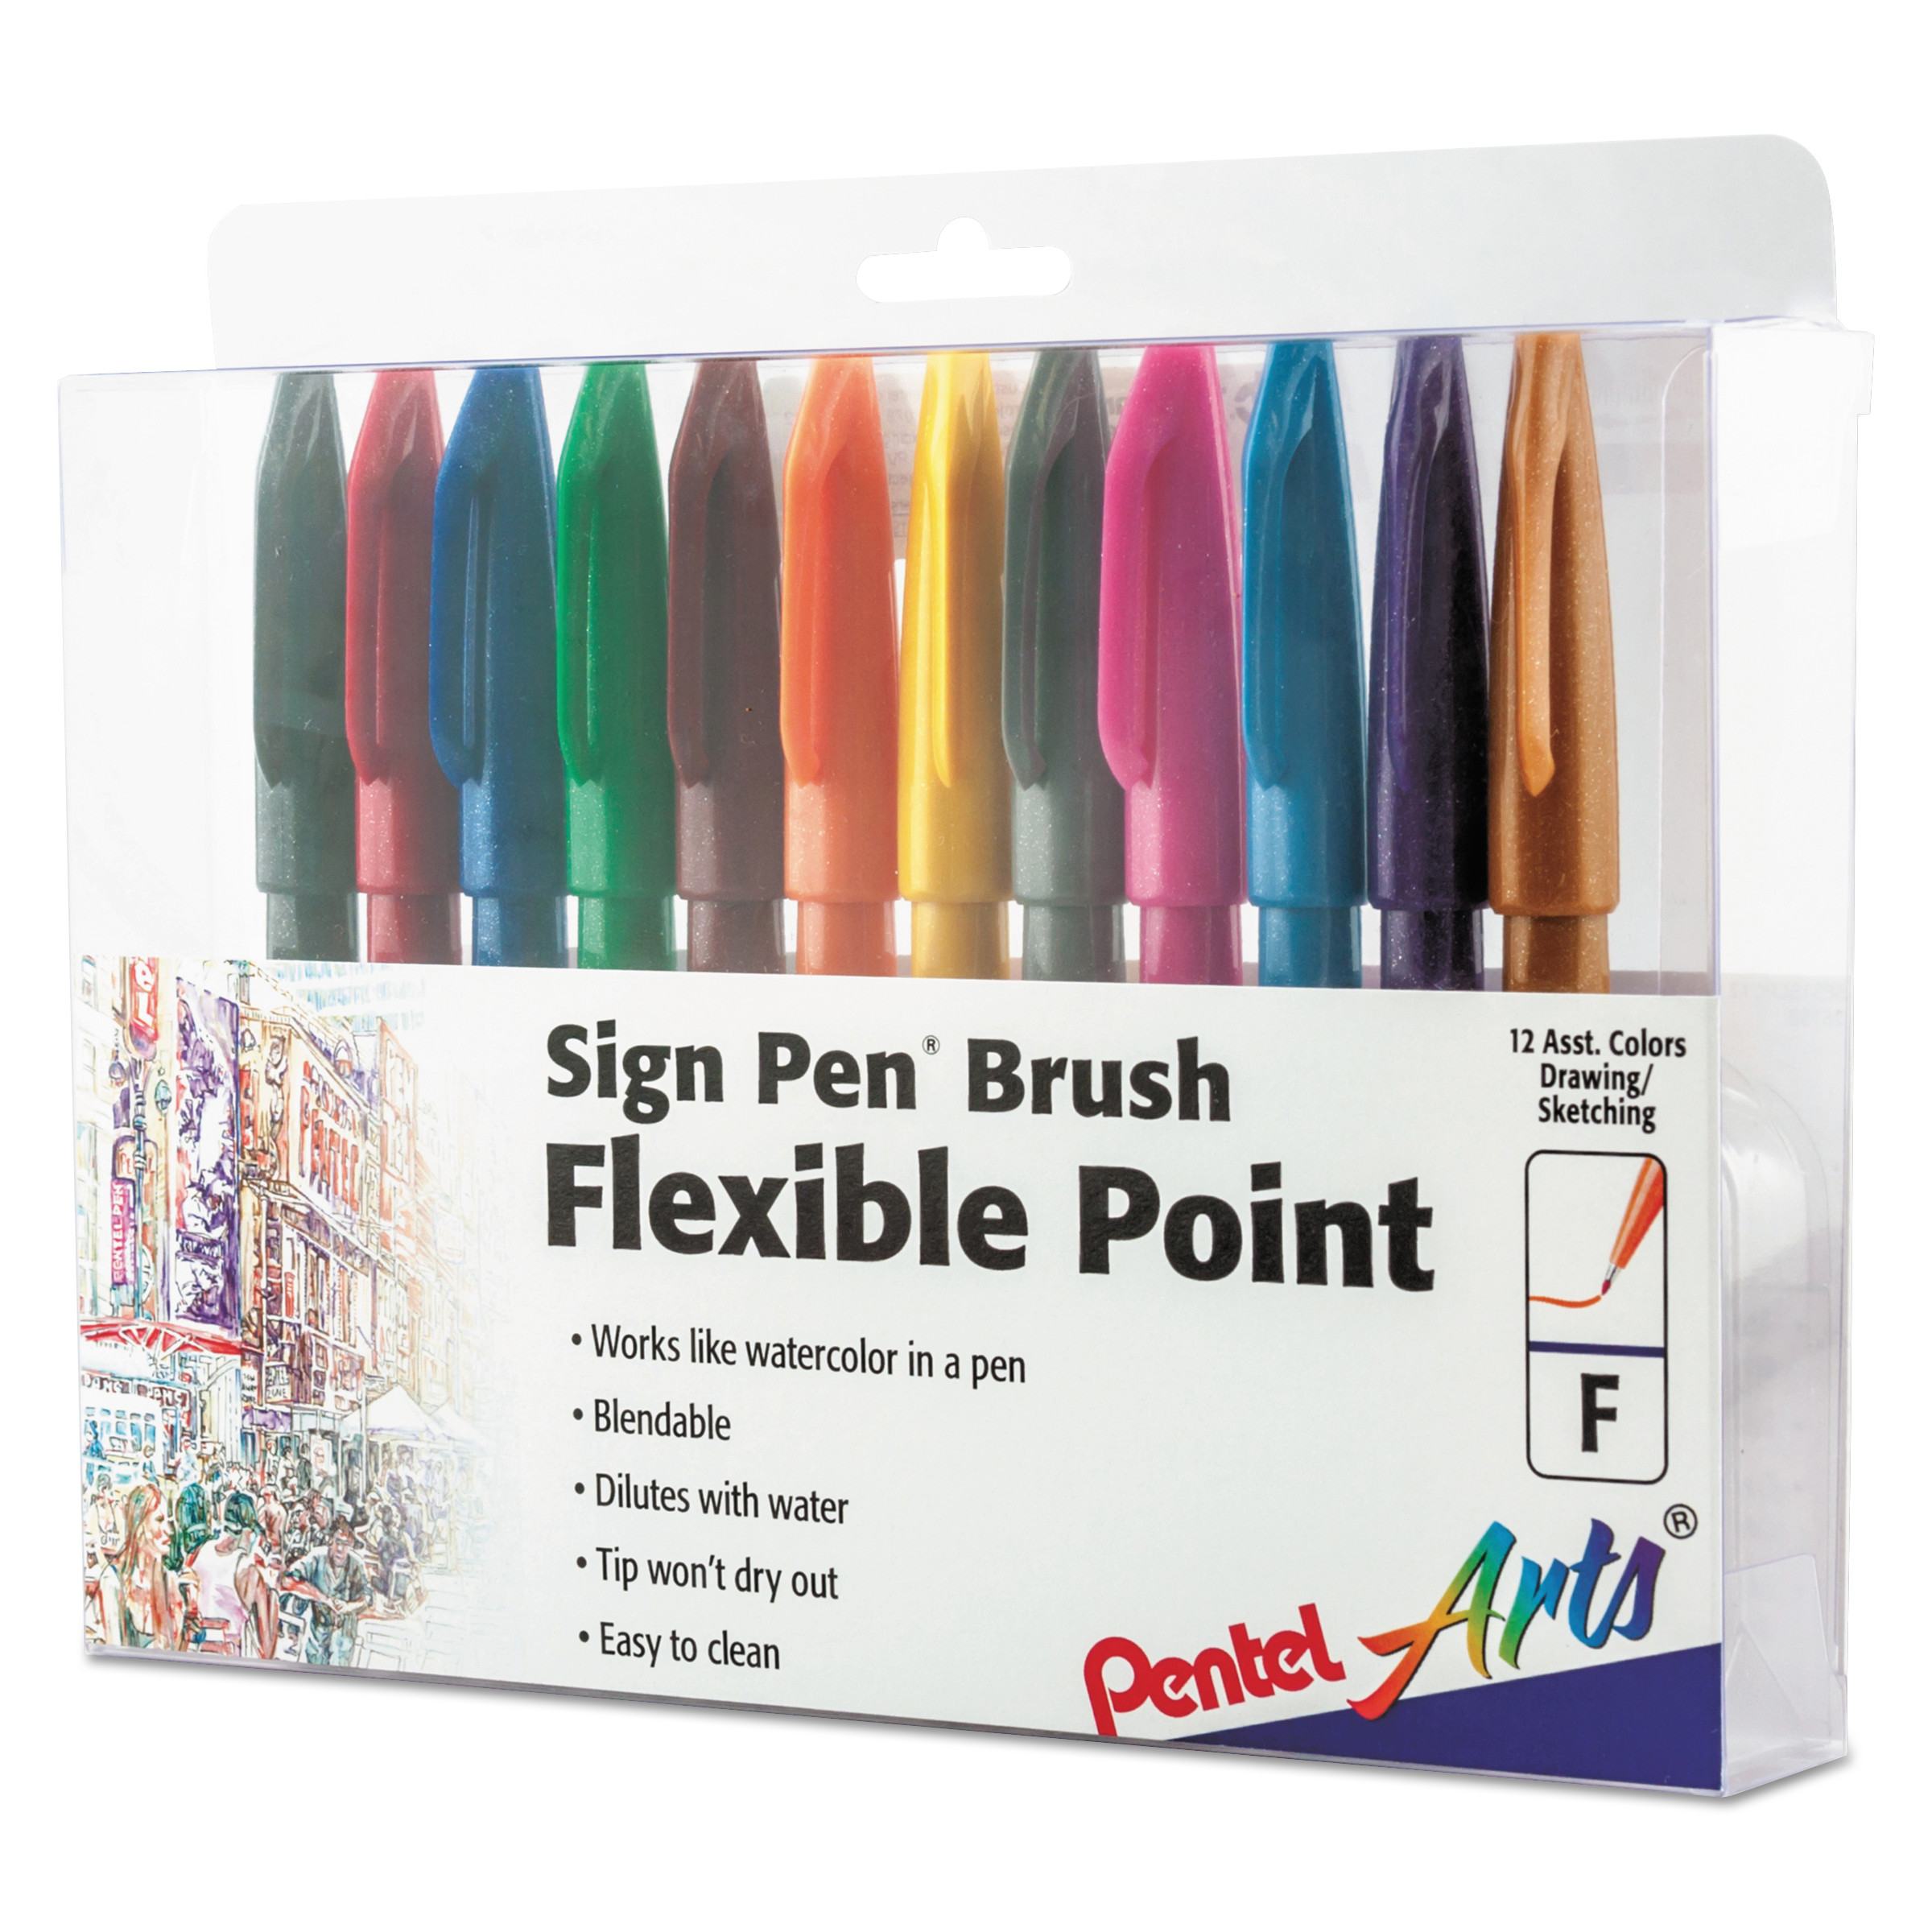 Sign Pen Brush Flexible Point Marker Pen, Assorted, 12/Pack